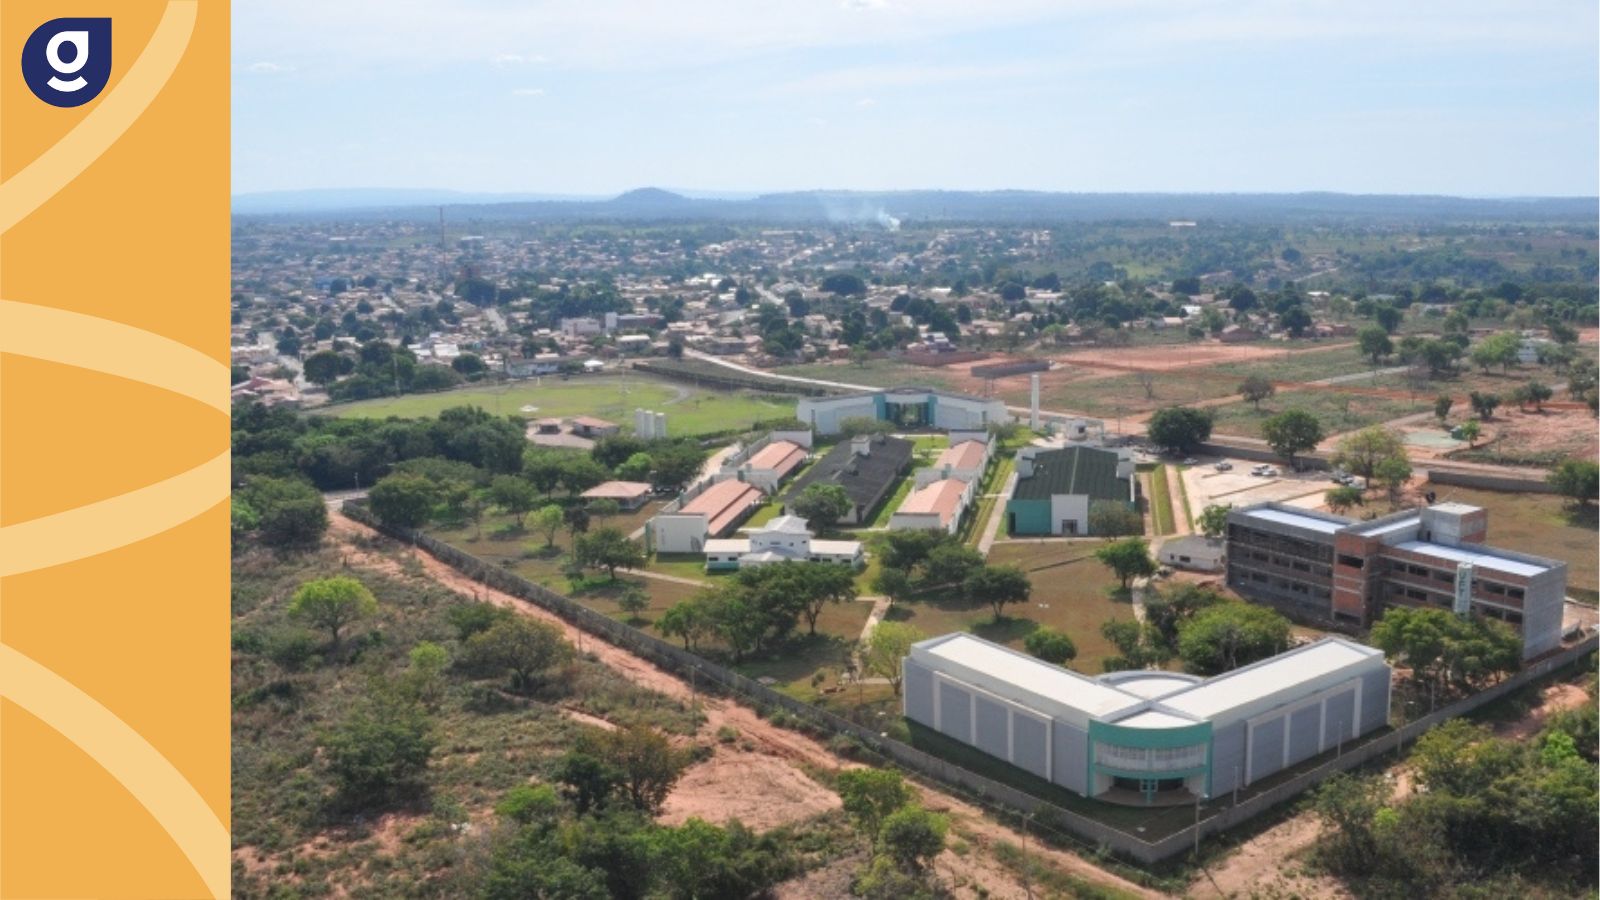 AEB e Universidade Federal do Tocantins assinam acordo na área espacial tocantins